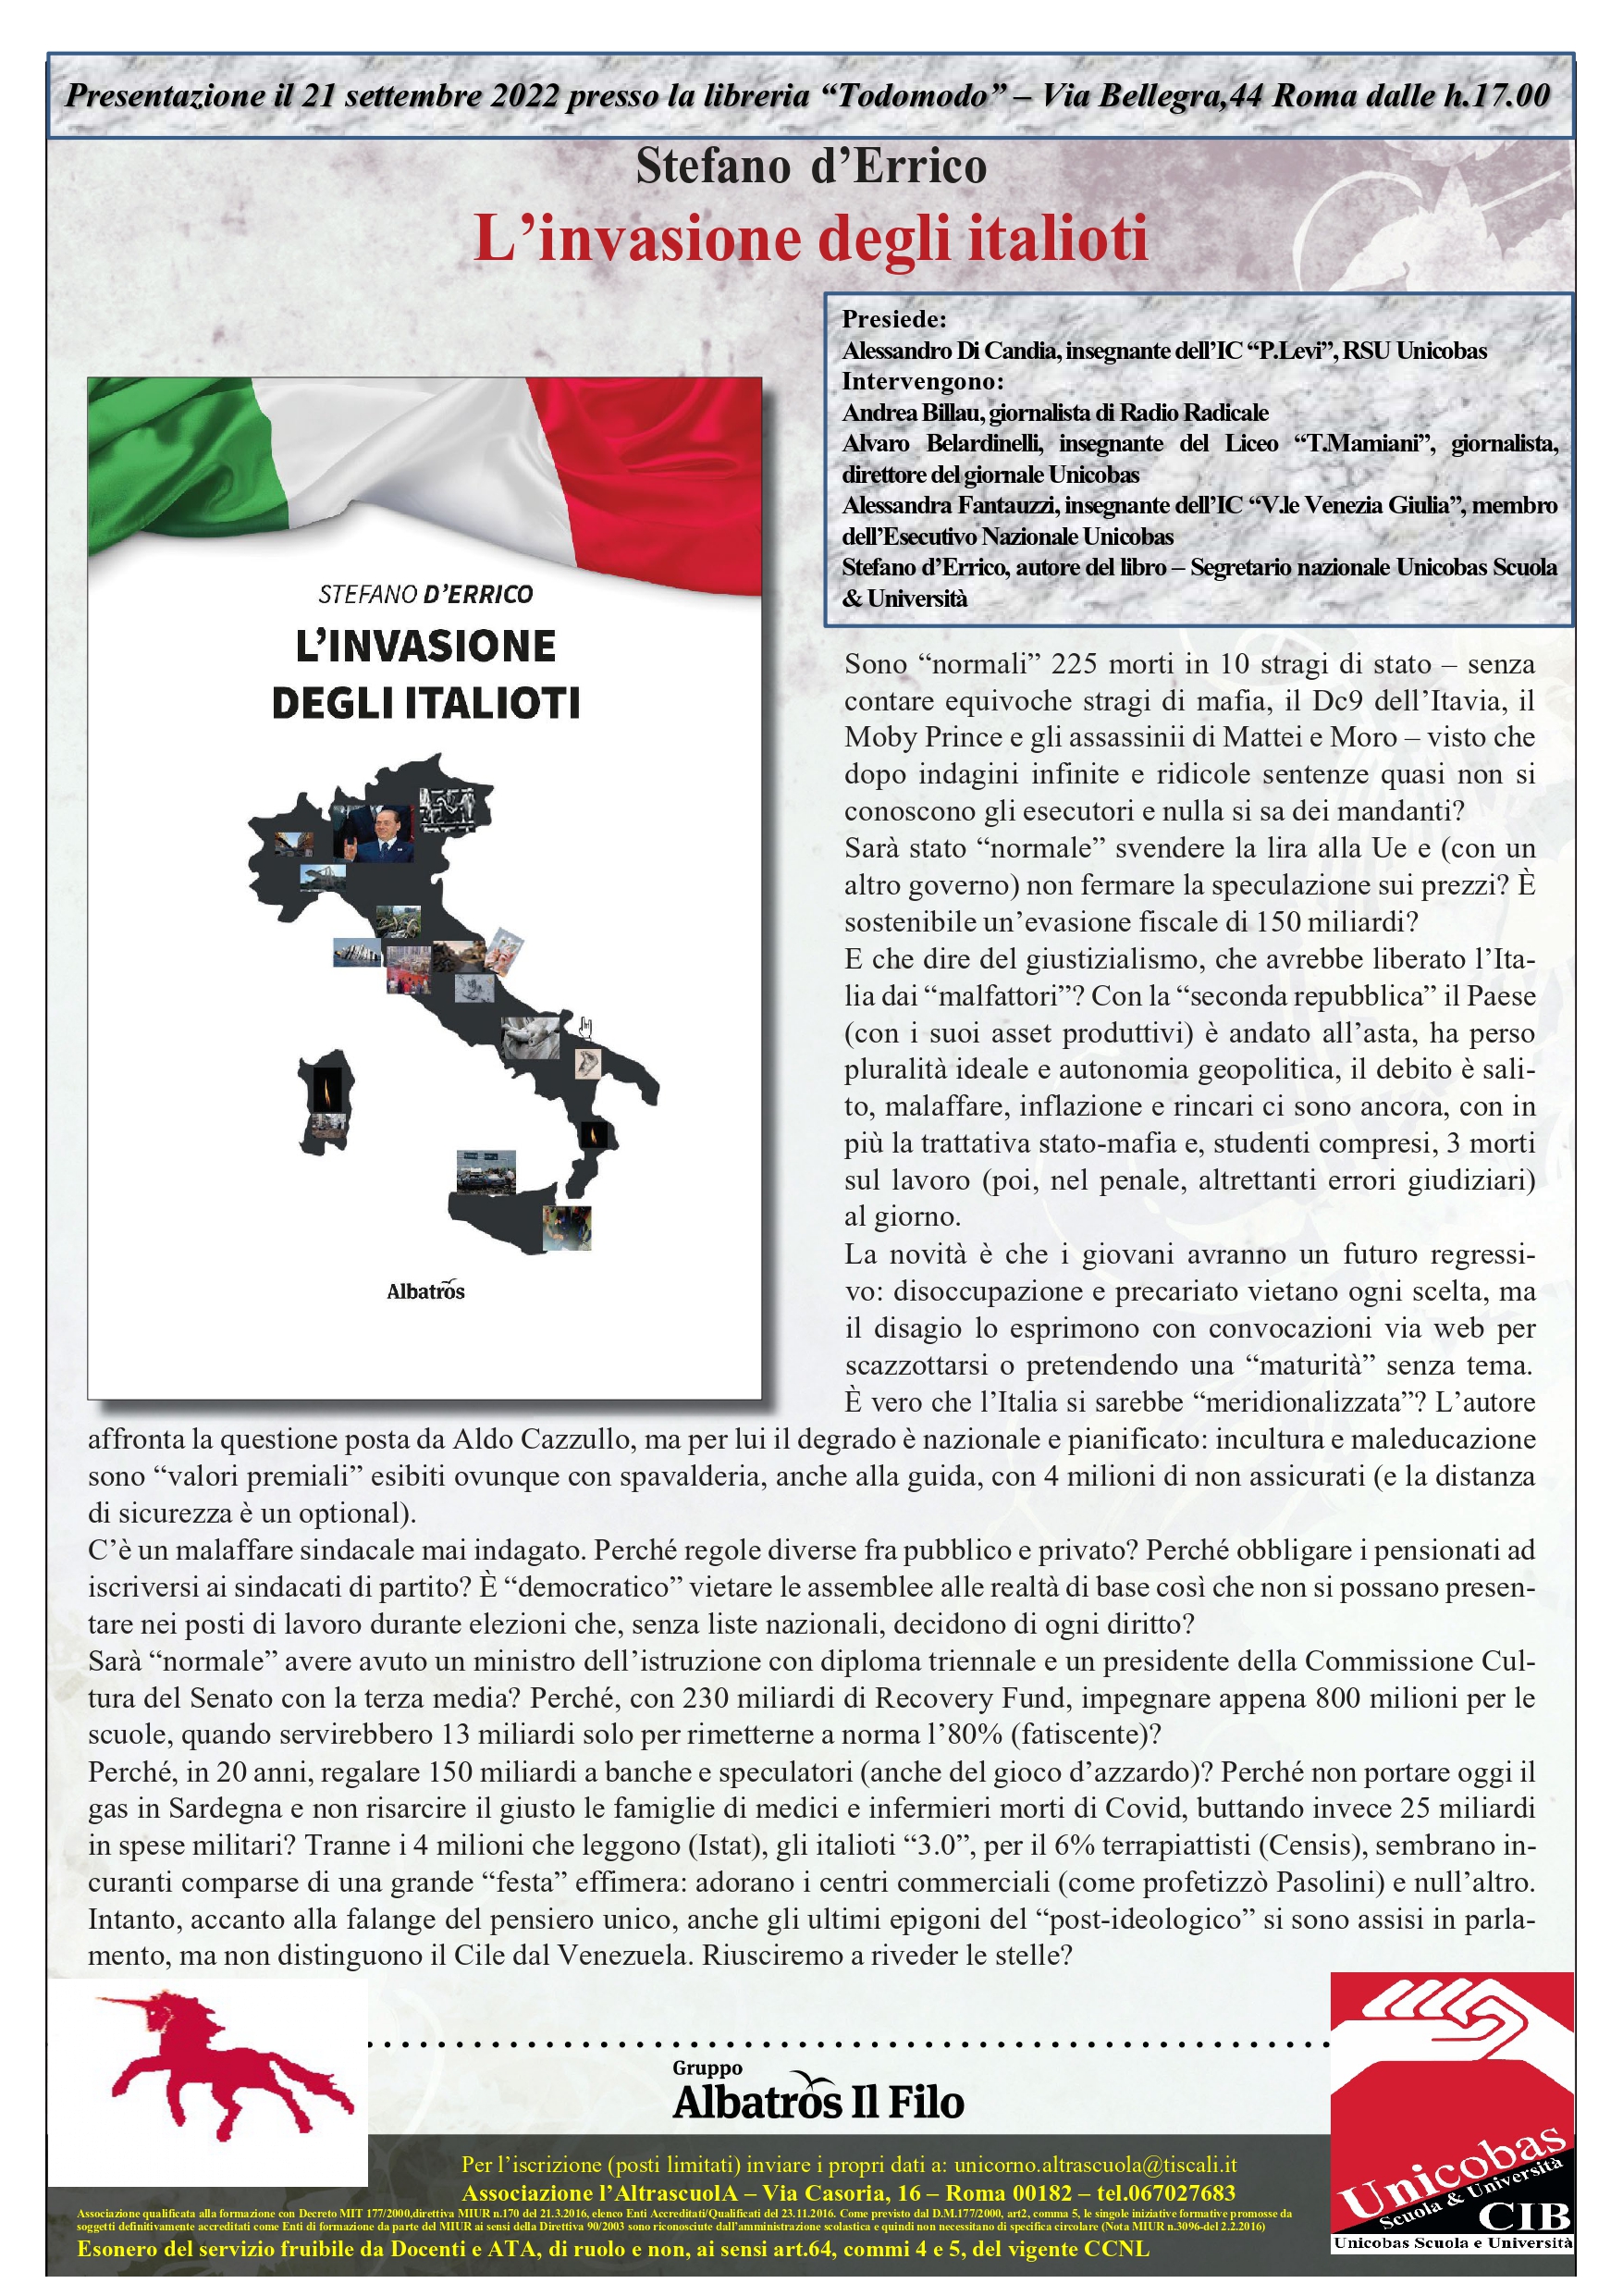 2/6/2022 “Se Scrivendo”: Intervista a S.d’Errico autore de “L’invasione degli italioti”